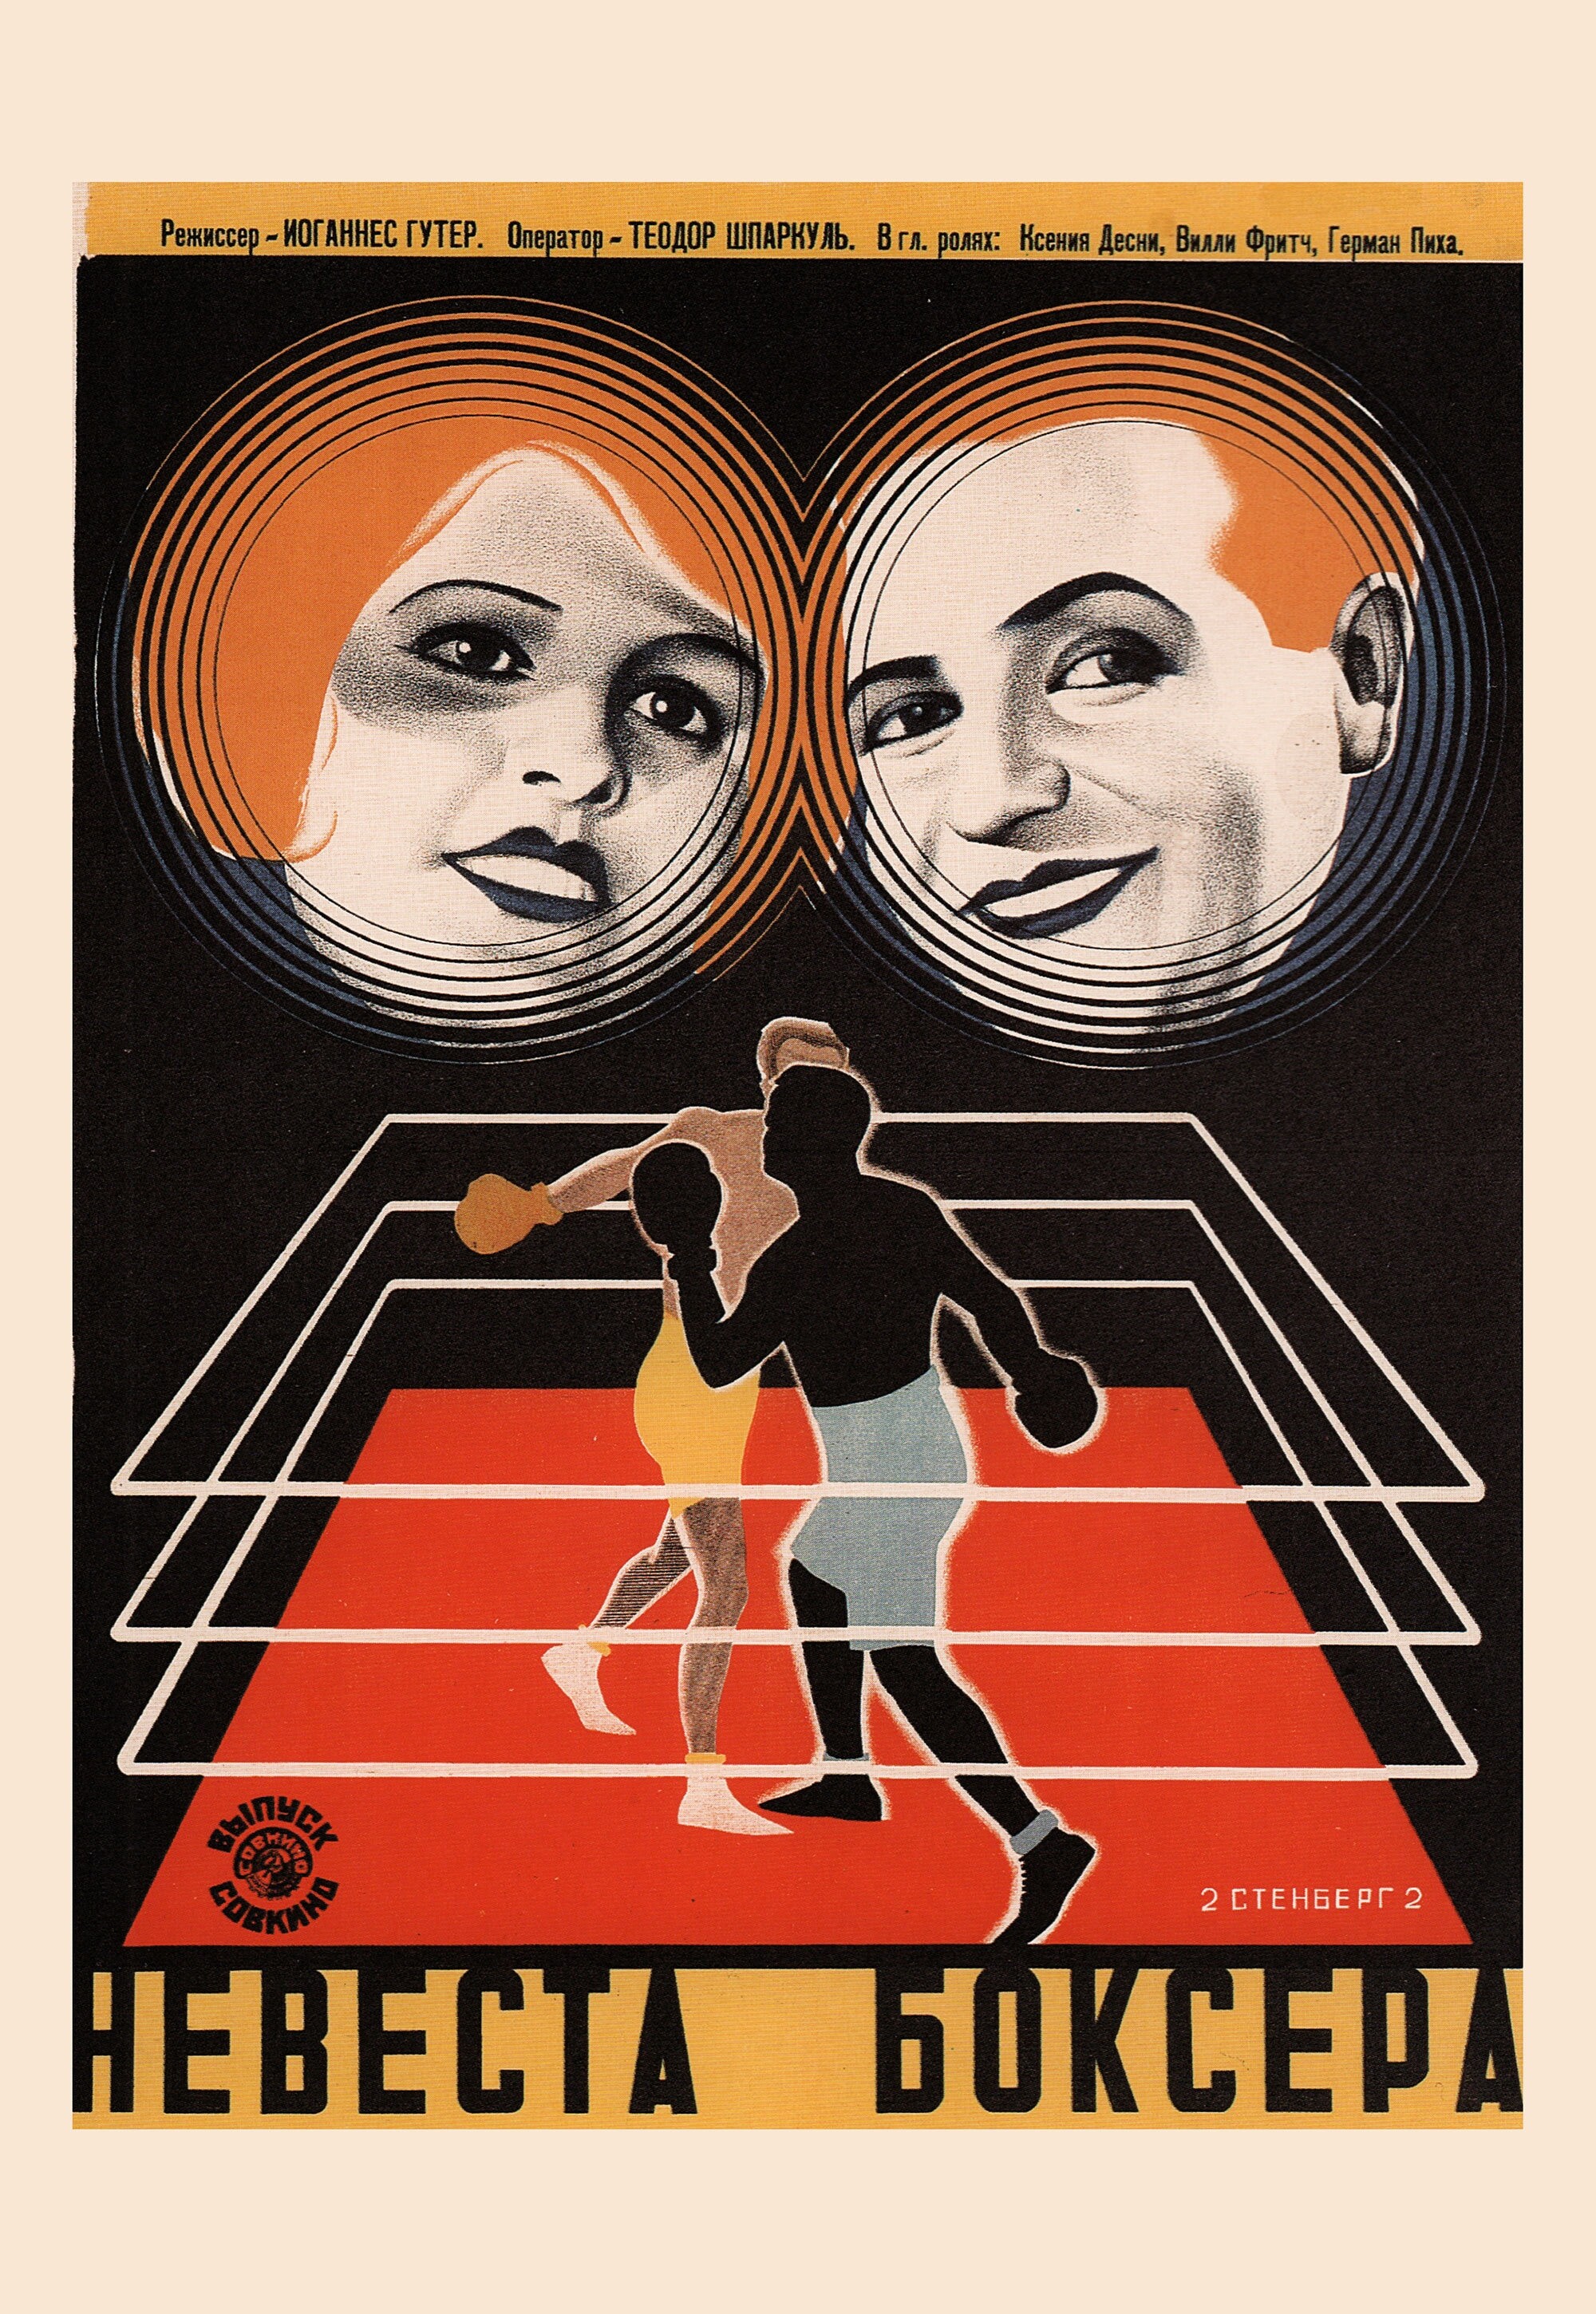 Невеста боксера, 1929 год, режиссёр Йоханнес Гутер, плакат к фильму, авторы Георгий и Владимир Стенберги (авангардное советское искусство, 1920-е)